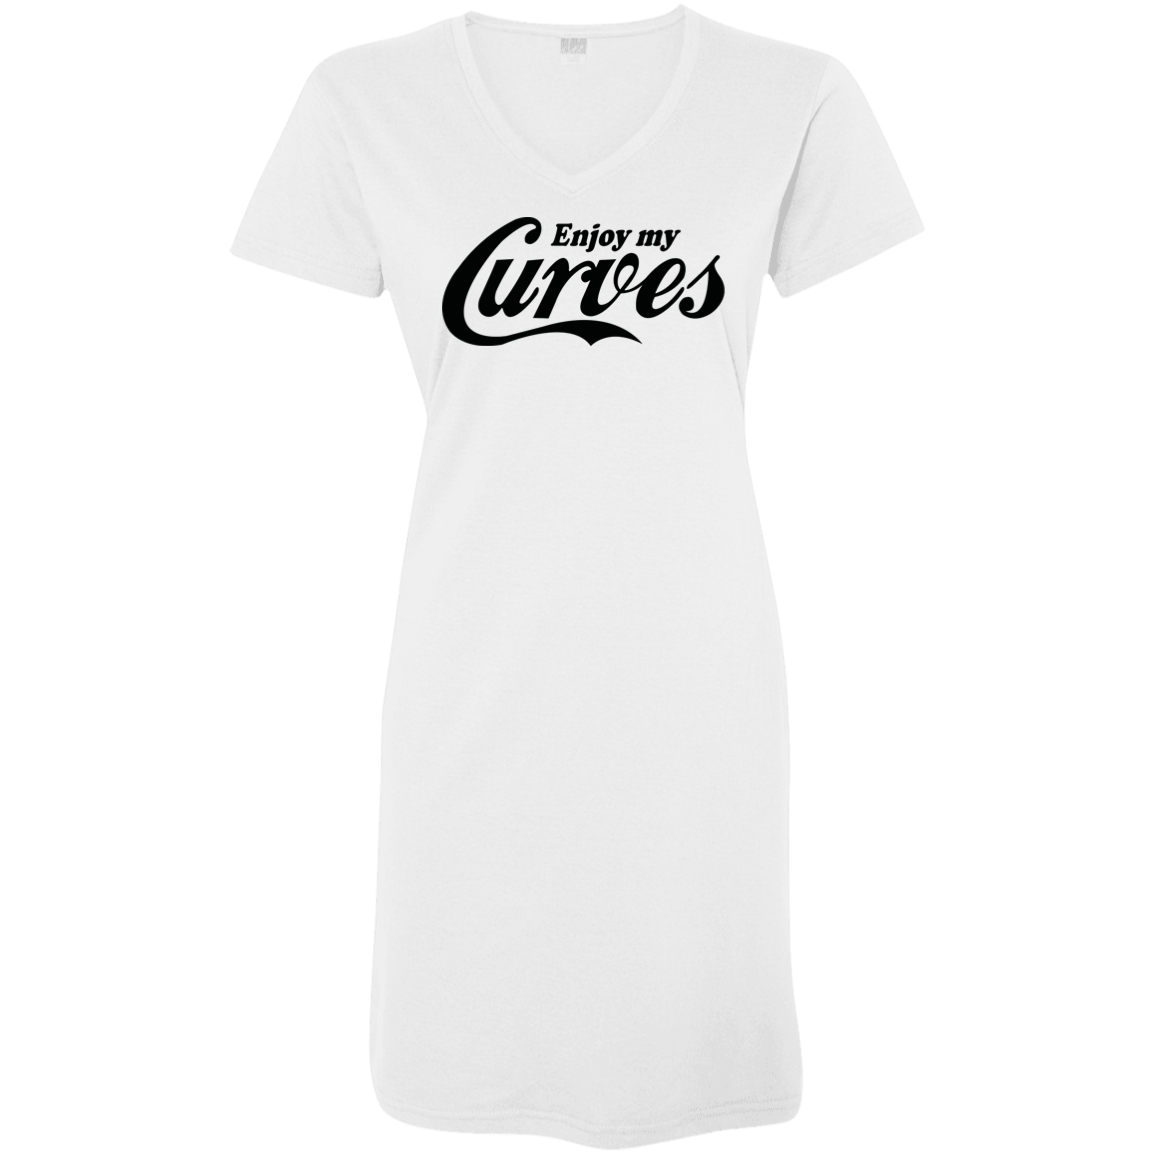 Enjoy my curves - V Neck Tshirt Dress